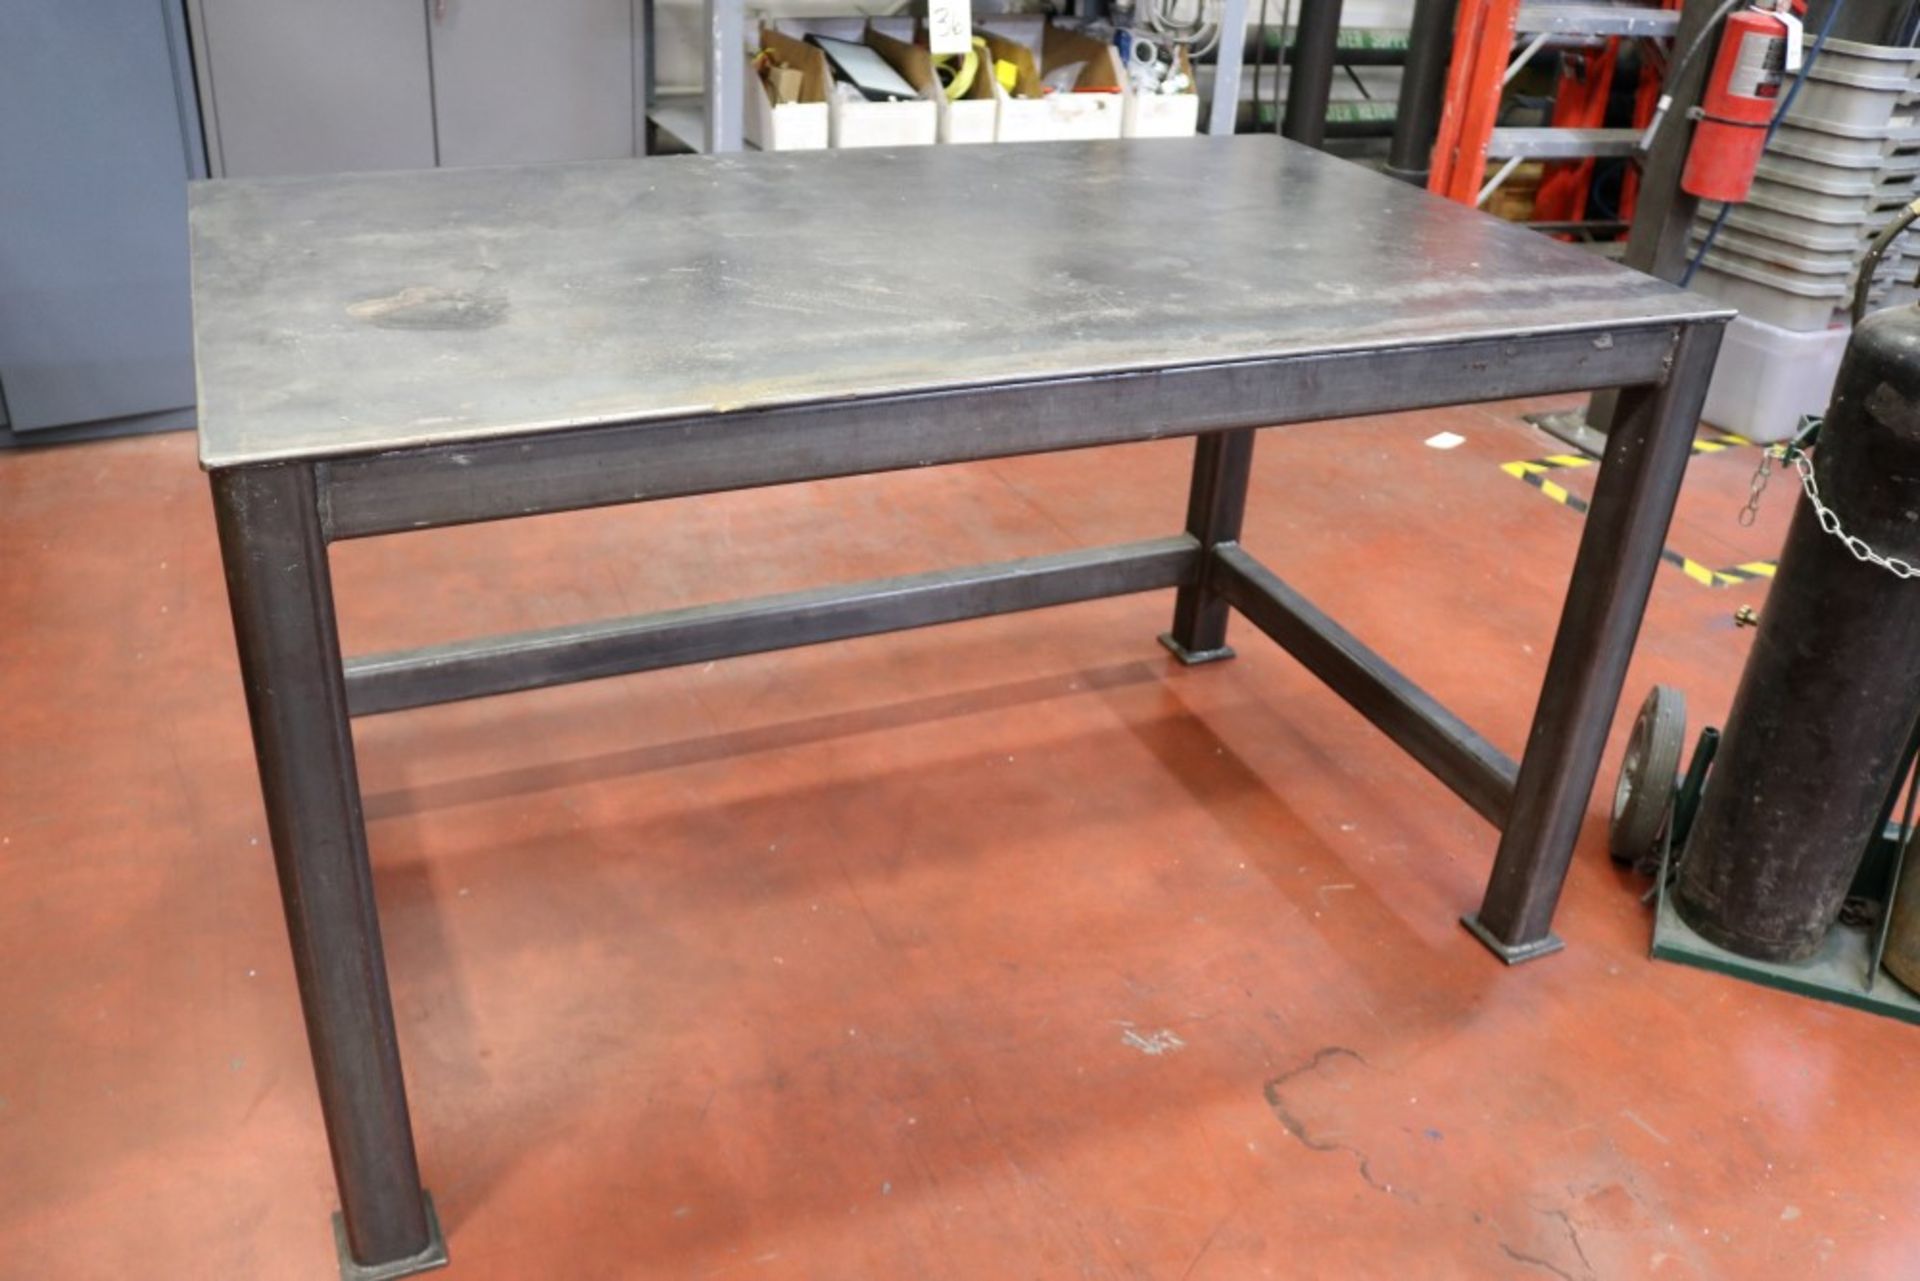 Welding Table Heavy Duty Steel 34" x 36" x 60" w/ Rolling Oxy Acetelyne Torch - Image 3 of 10